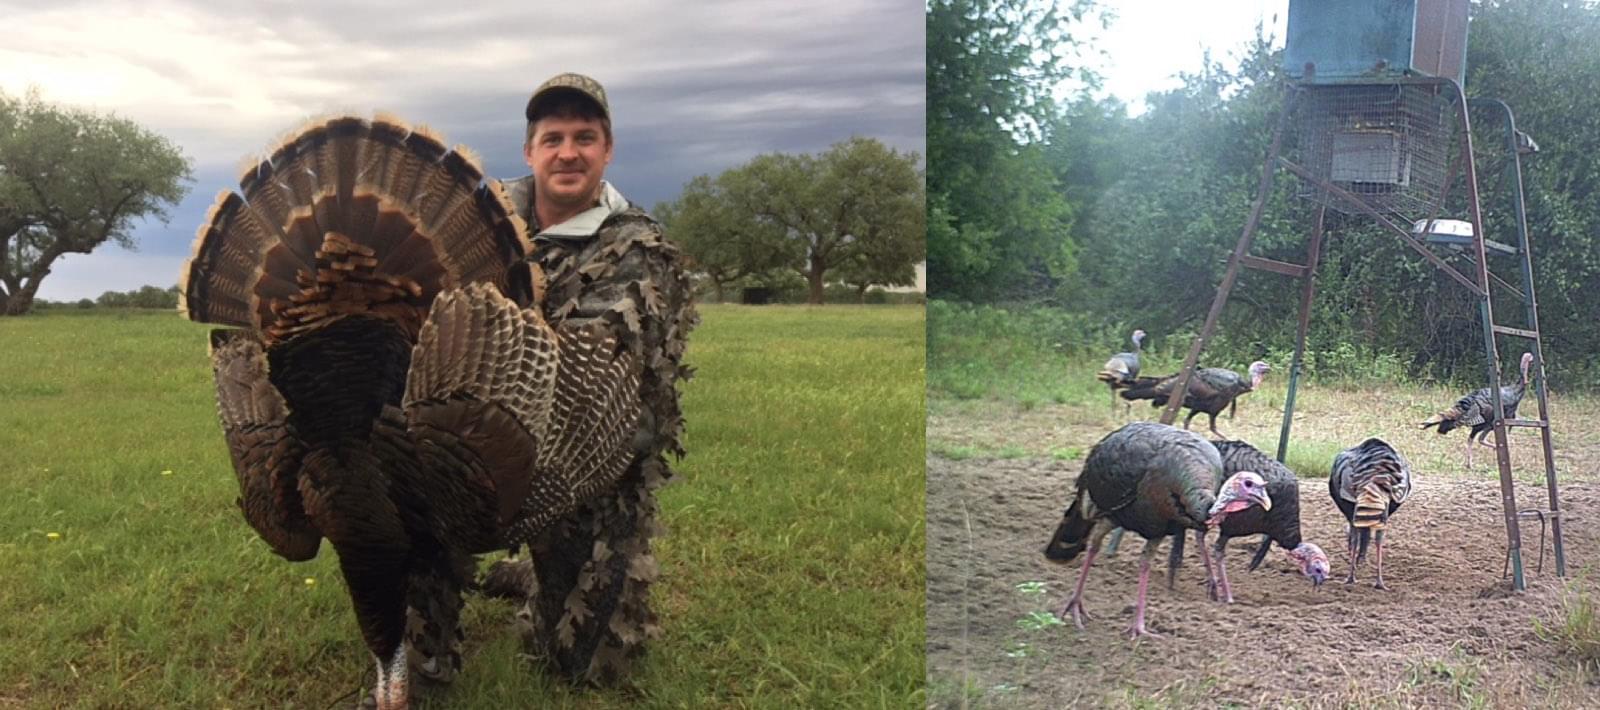 South Texas Free Range Turkey Hunting